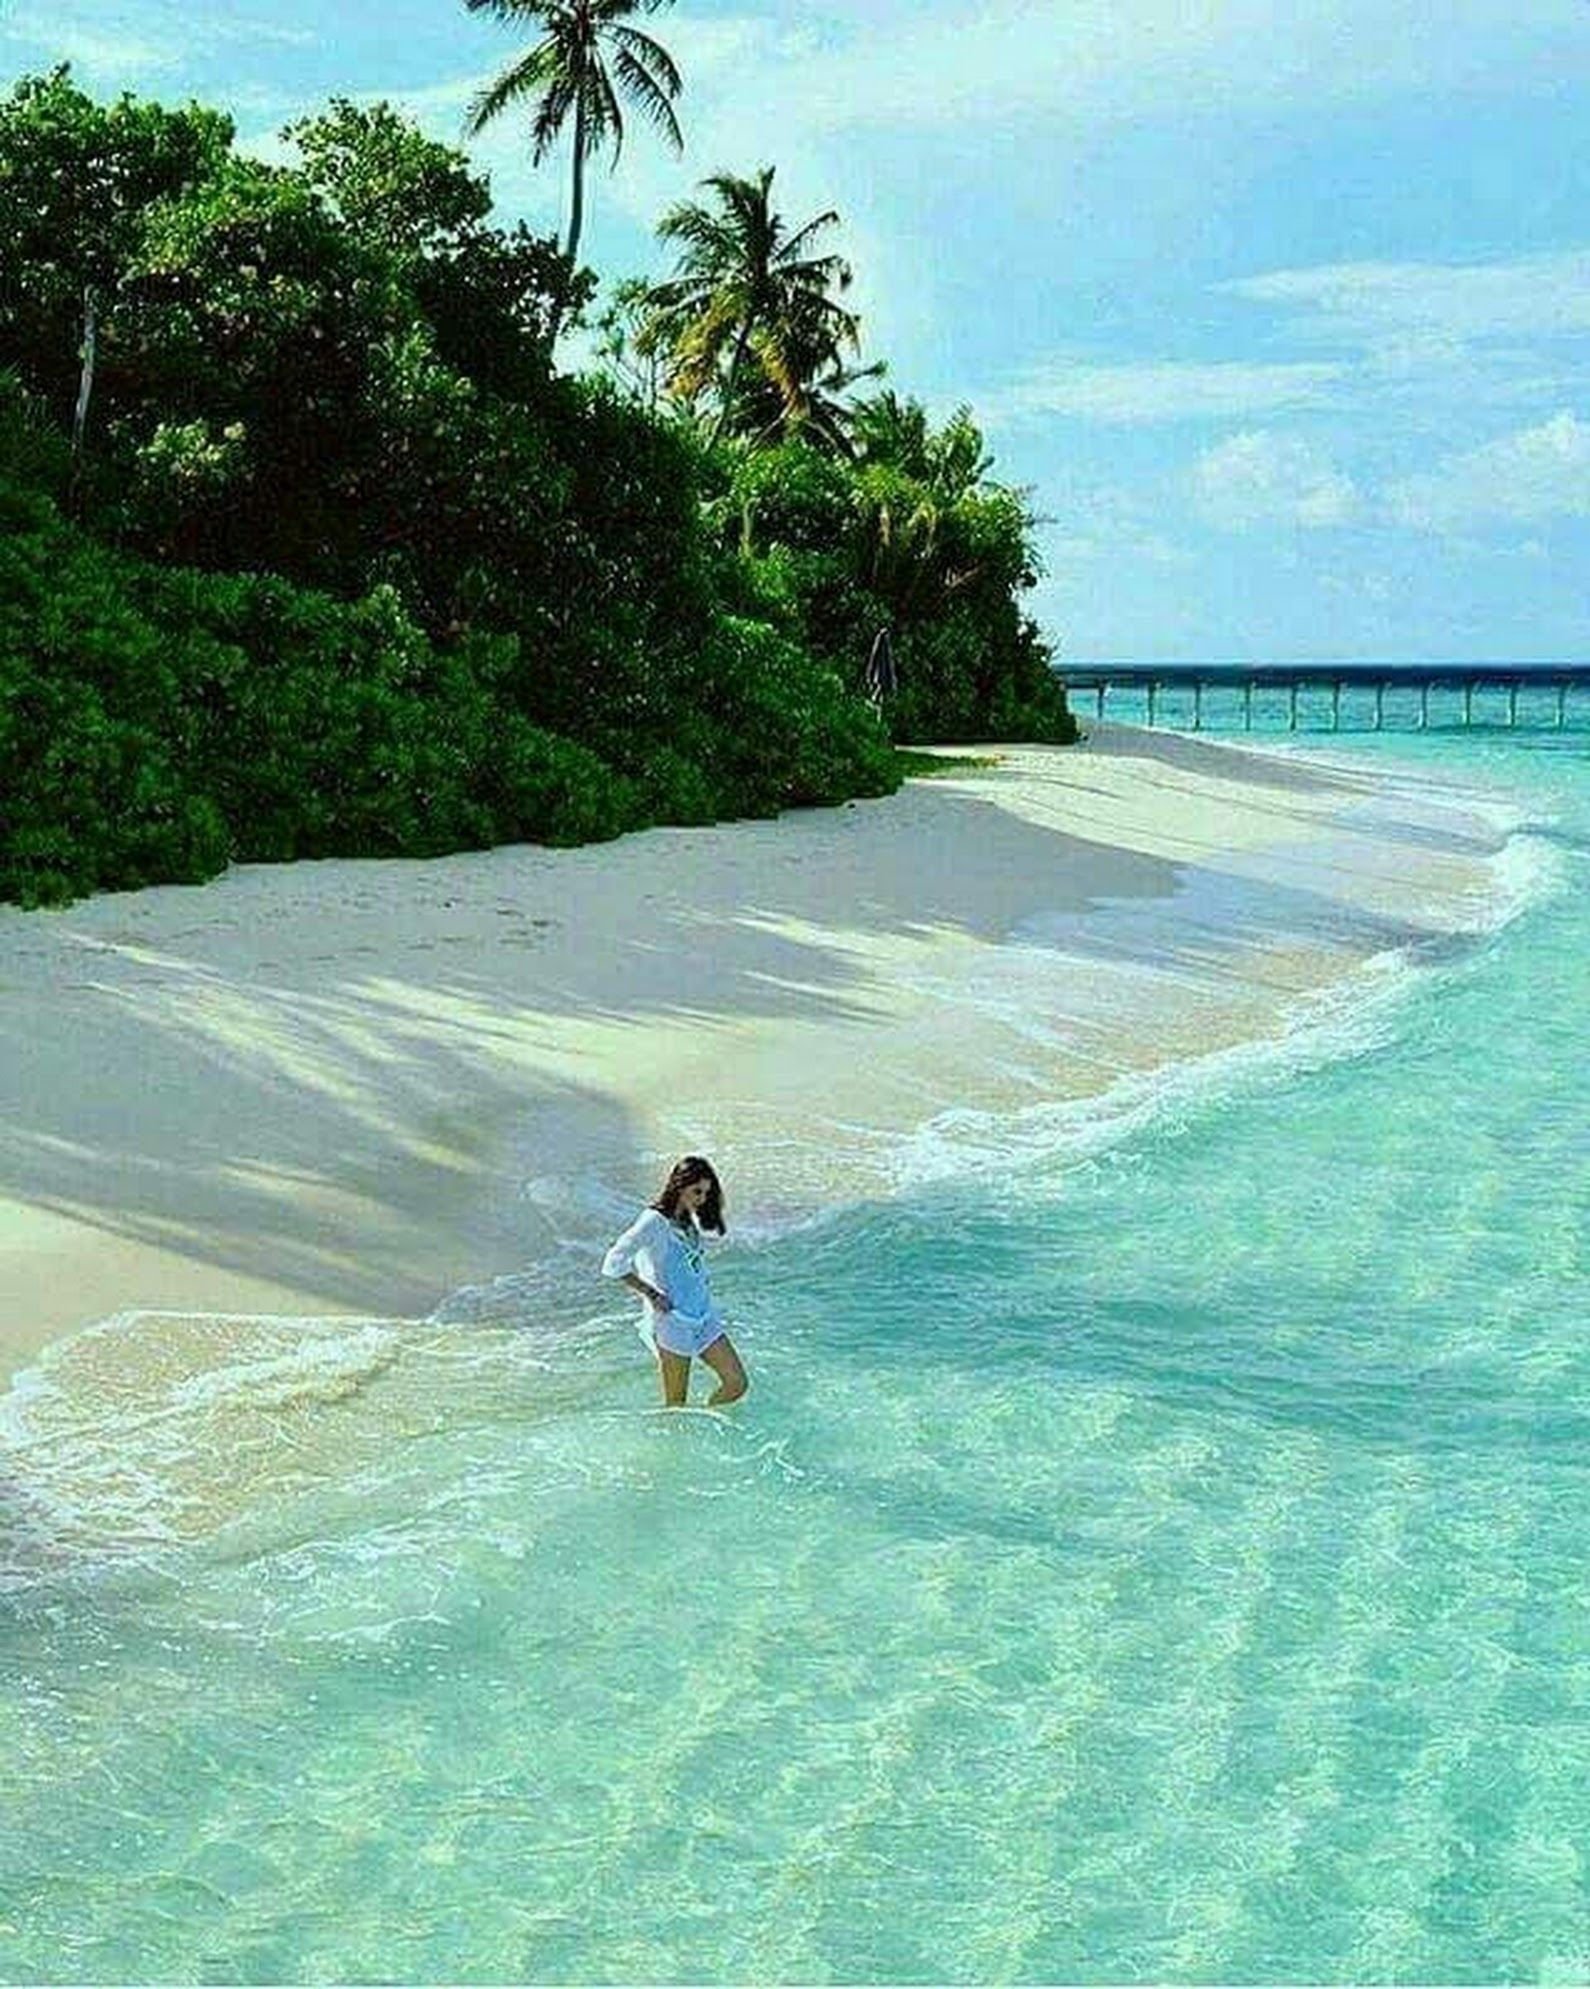 Берег для купания. Лаккадивское море Мальдивы. Бали море. Бали (остров в малайском архипелаге). Остров Мауритиус Мальдивы.